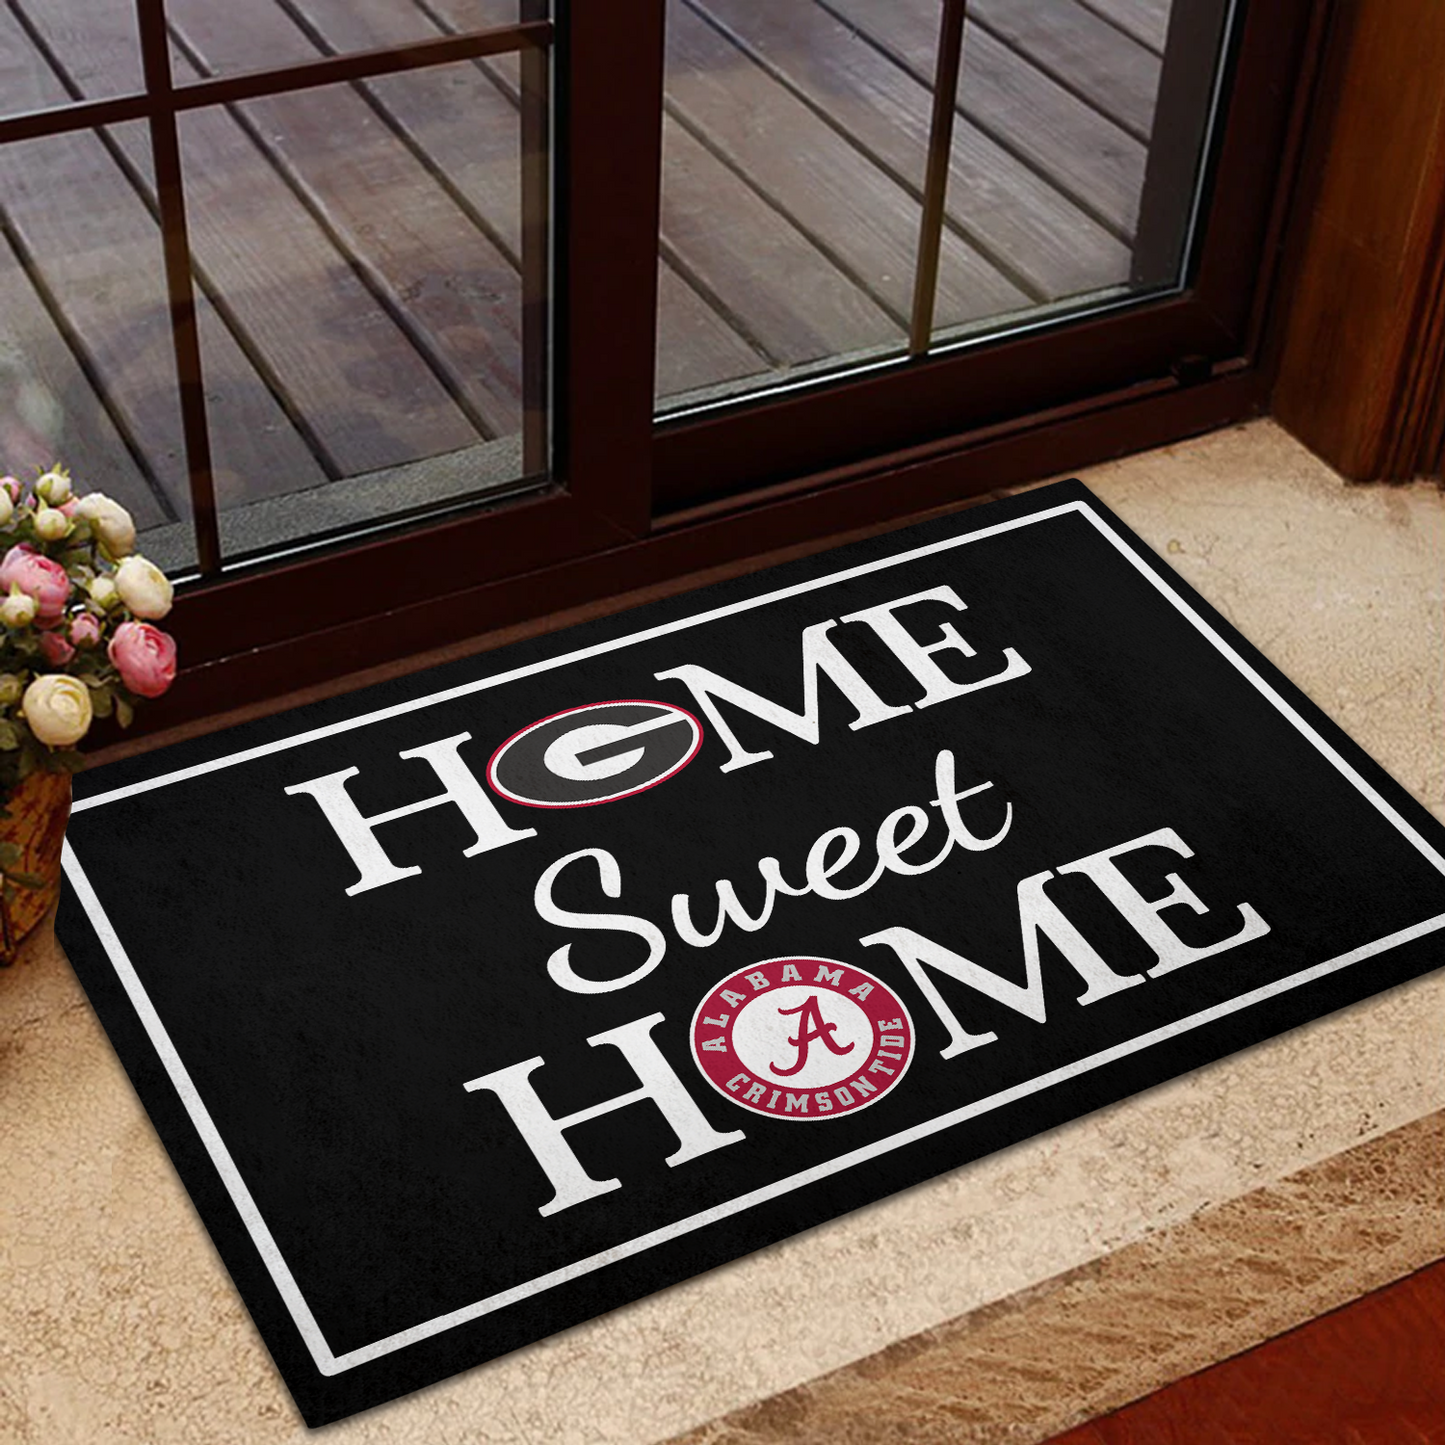 Home Sweet Home Doormat - Customized Doormat For Stephanie Denmark Marrero - Anti Slip Indoor Doormat